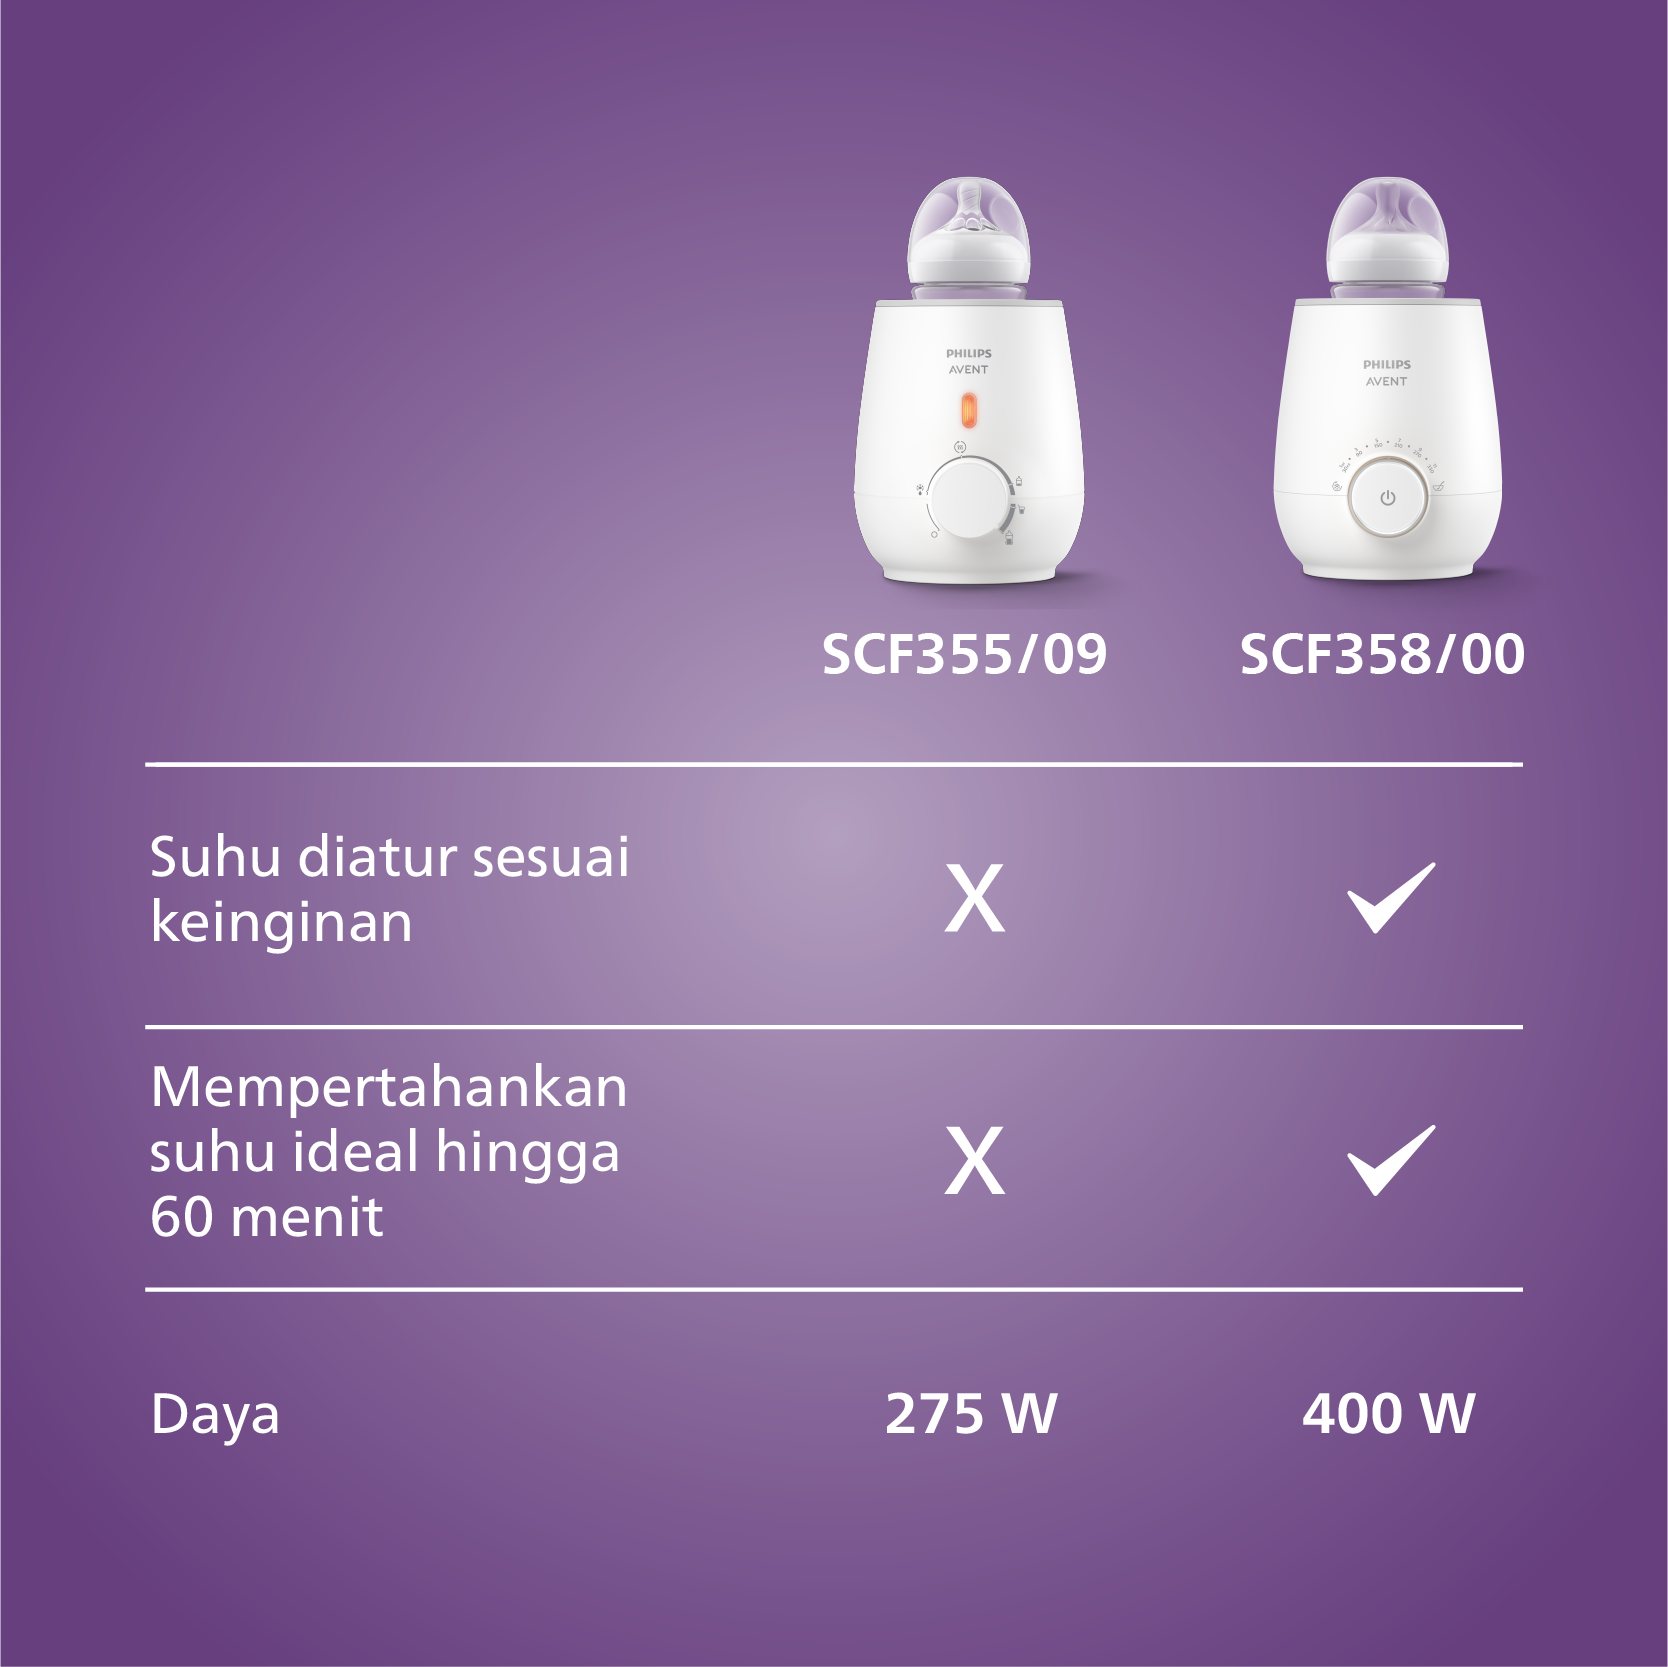 Philips Avent Sunshine Fast Bottle Warmer SCF358/00 Penghangat Botol - 3